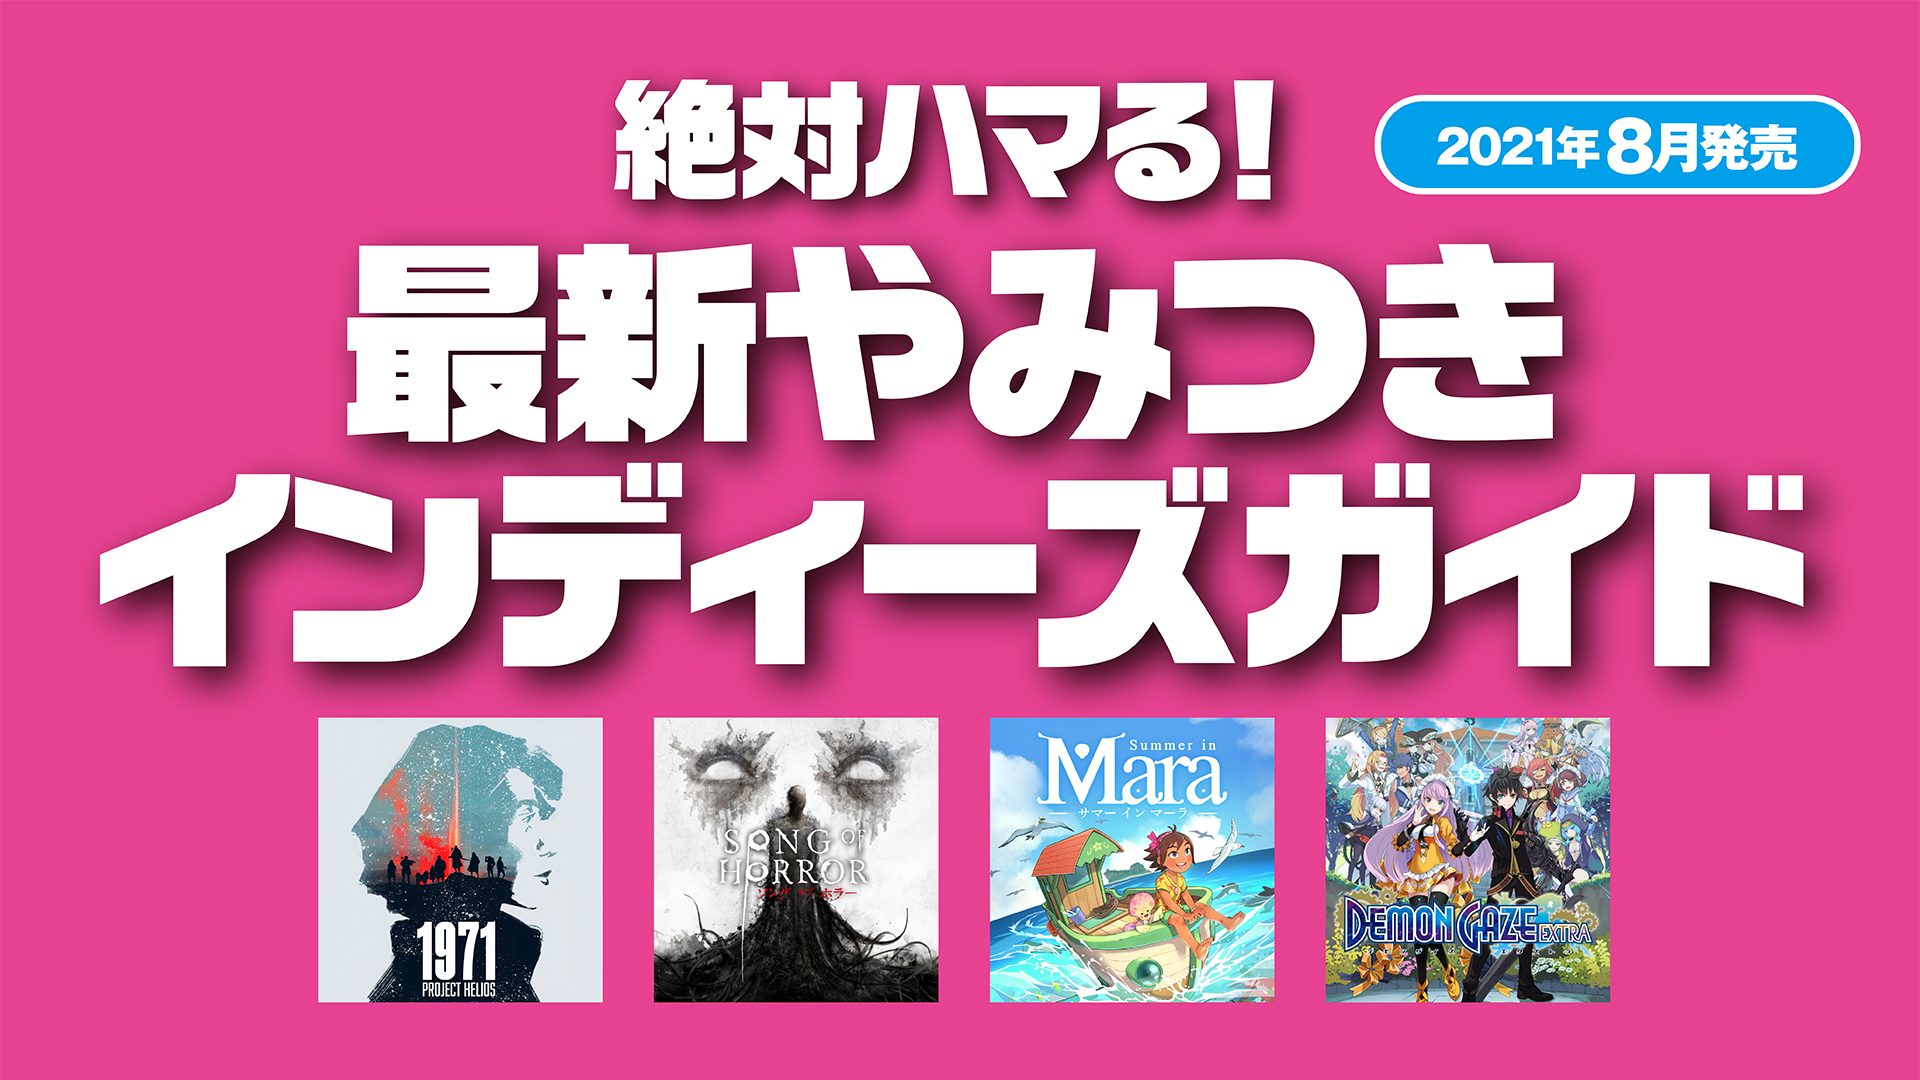 絶対ハマる 最新やみつきインディーズガイド 21年8月発売 Playstation Blog 日本語